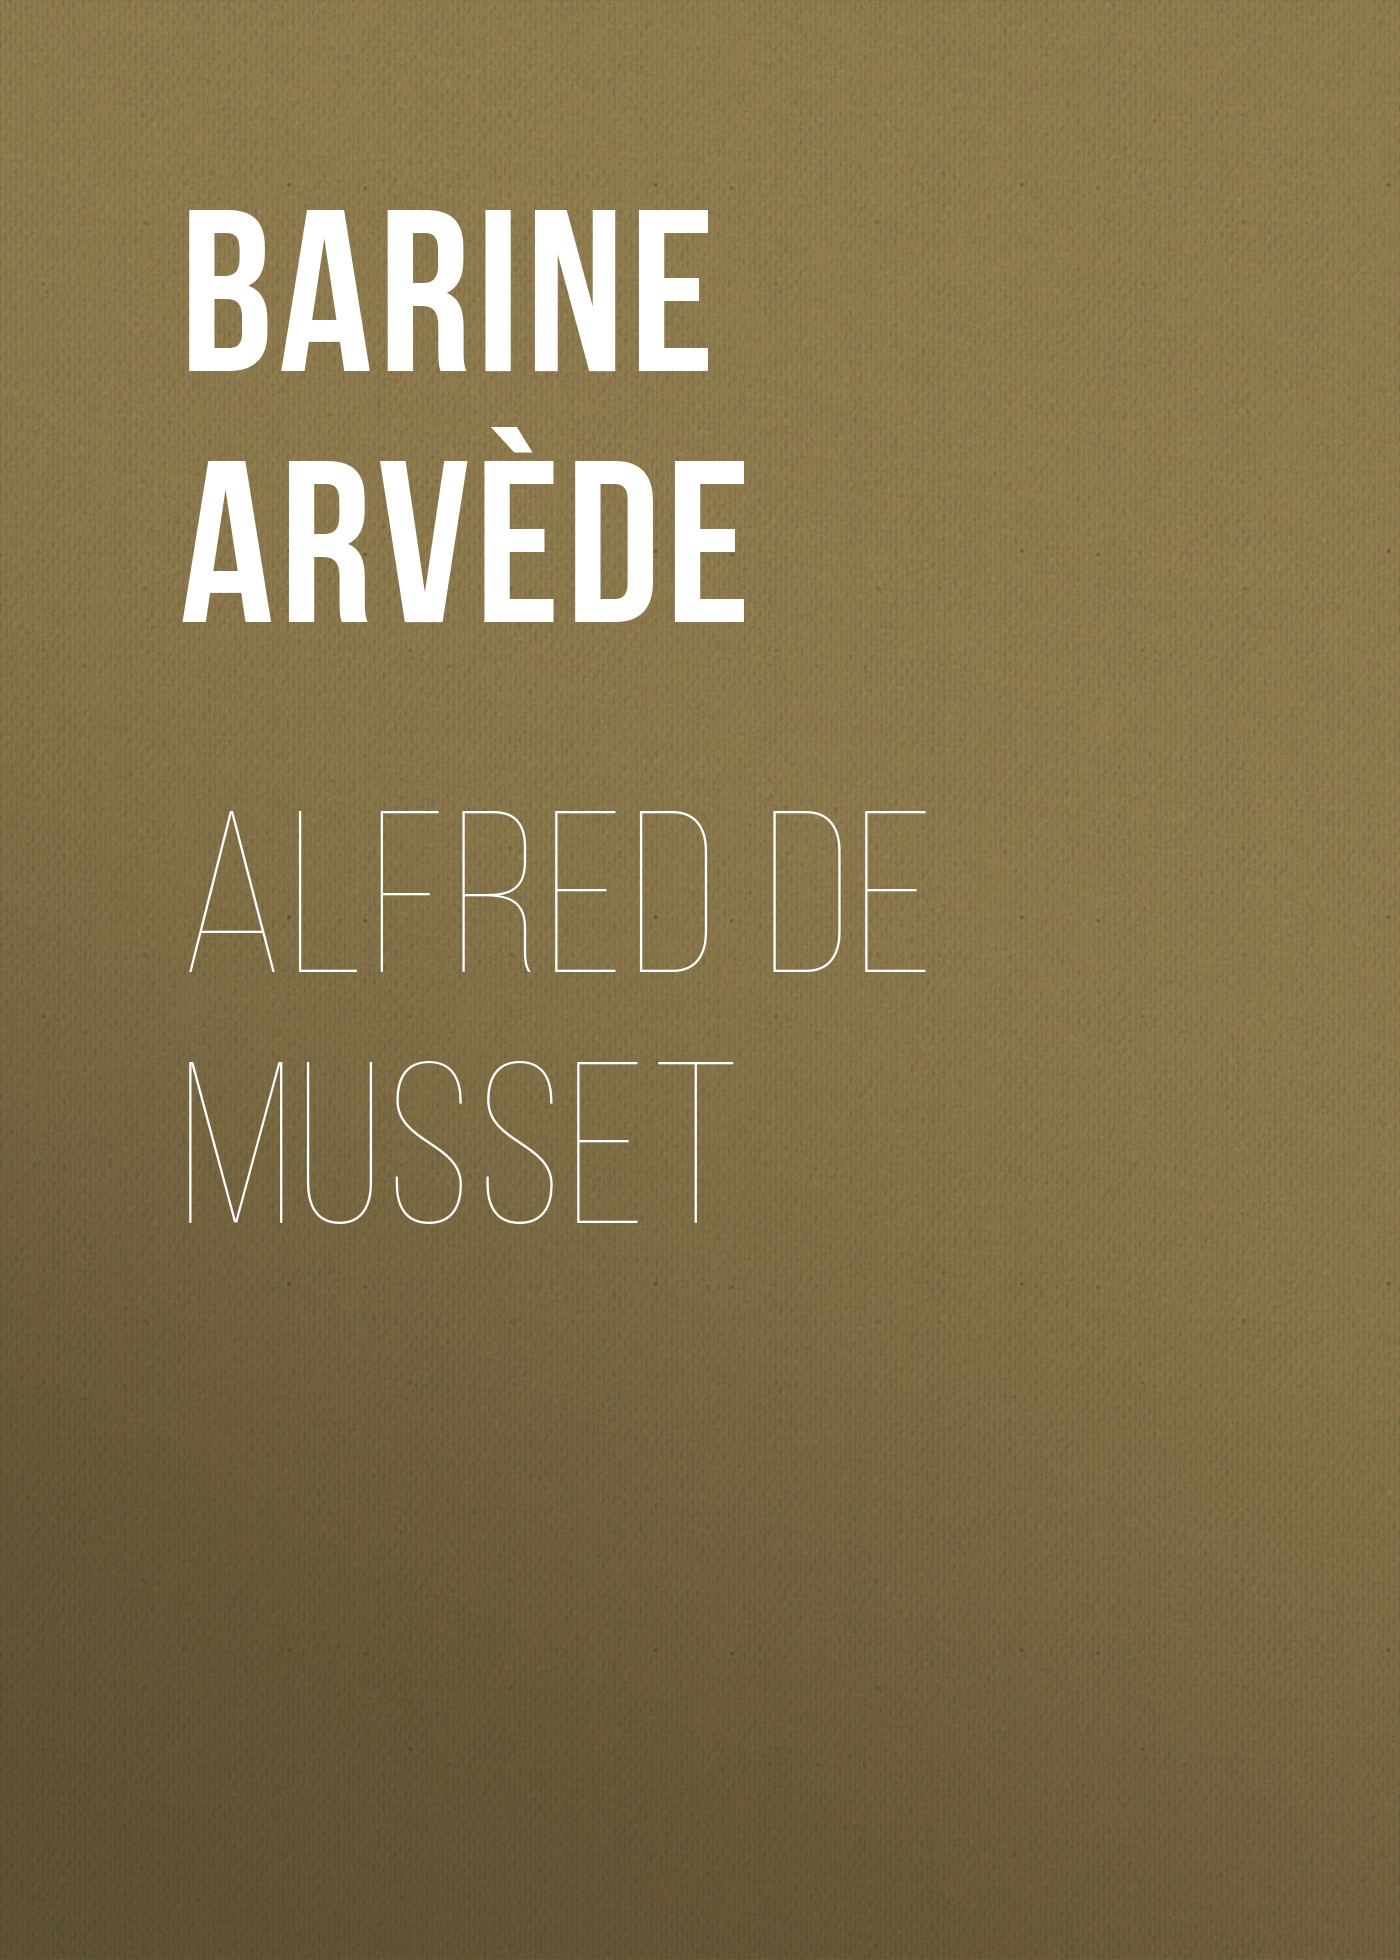 Книга Alfred de Musset из серии , созданная Arvède Barine, может относится к жанру Зарубежная старинная литература, Зарубежная классика. Стоимость электронной книги Alfred de Musset с идентификатором 24172548 составляет 0.90 руб.